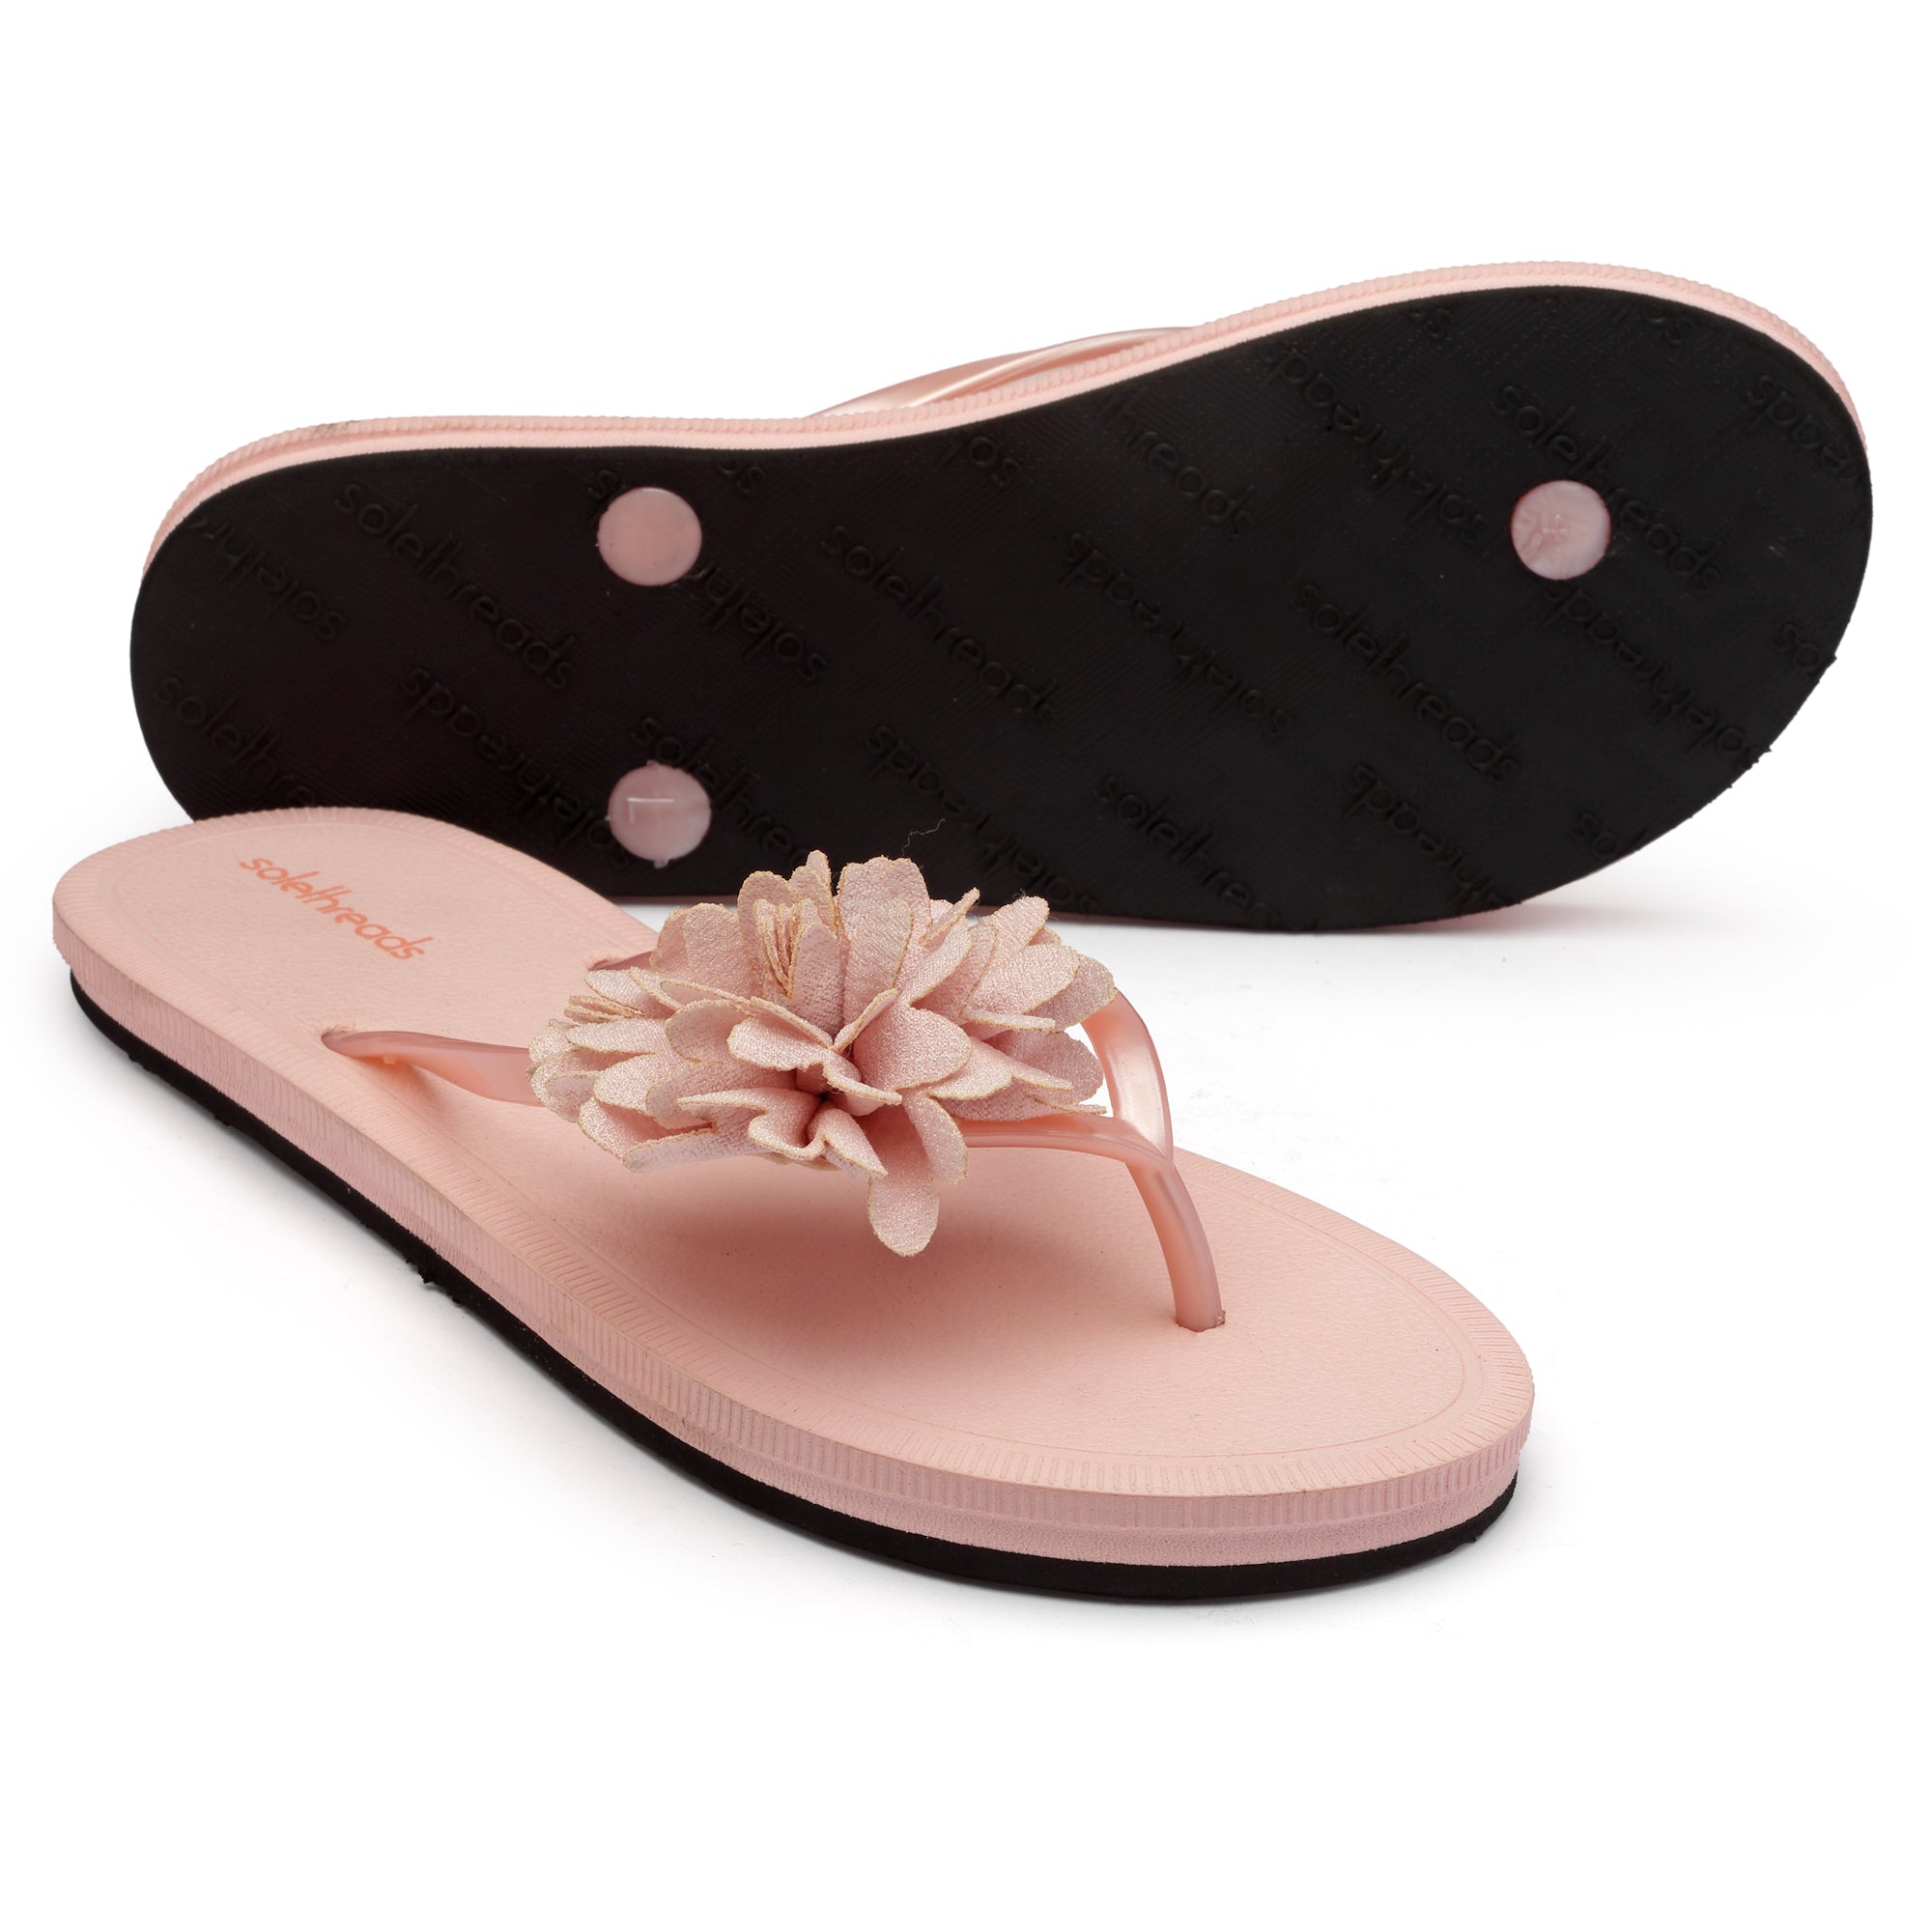 Buy SOLETHREADS Yoga Sandal Fabric Slipon Womem's Sandals